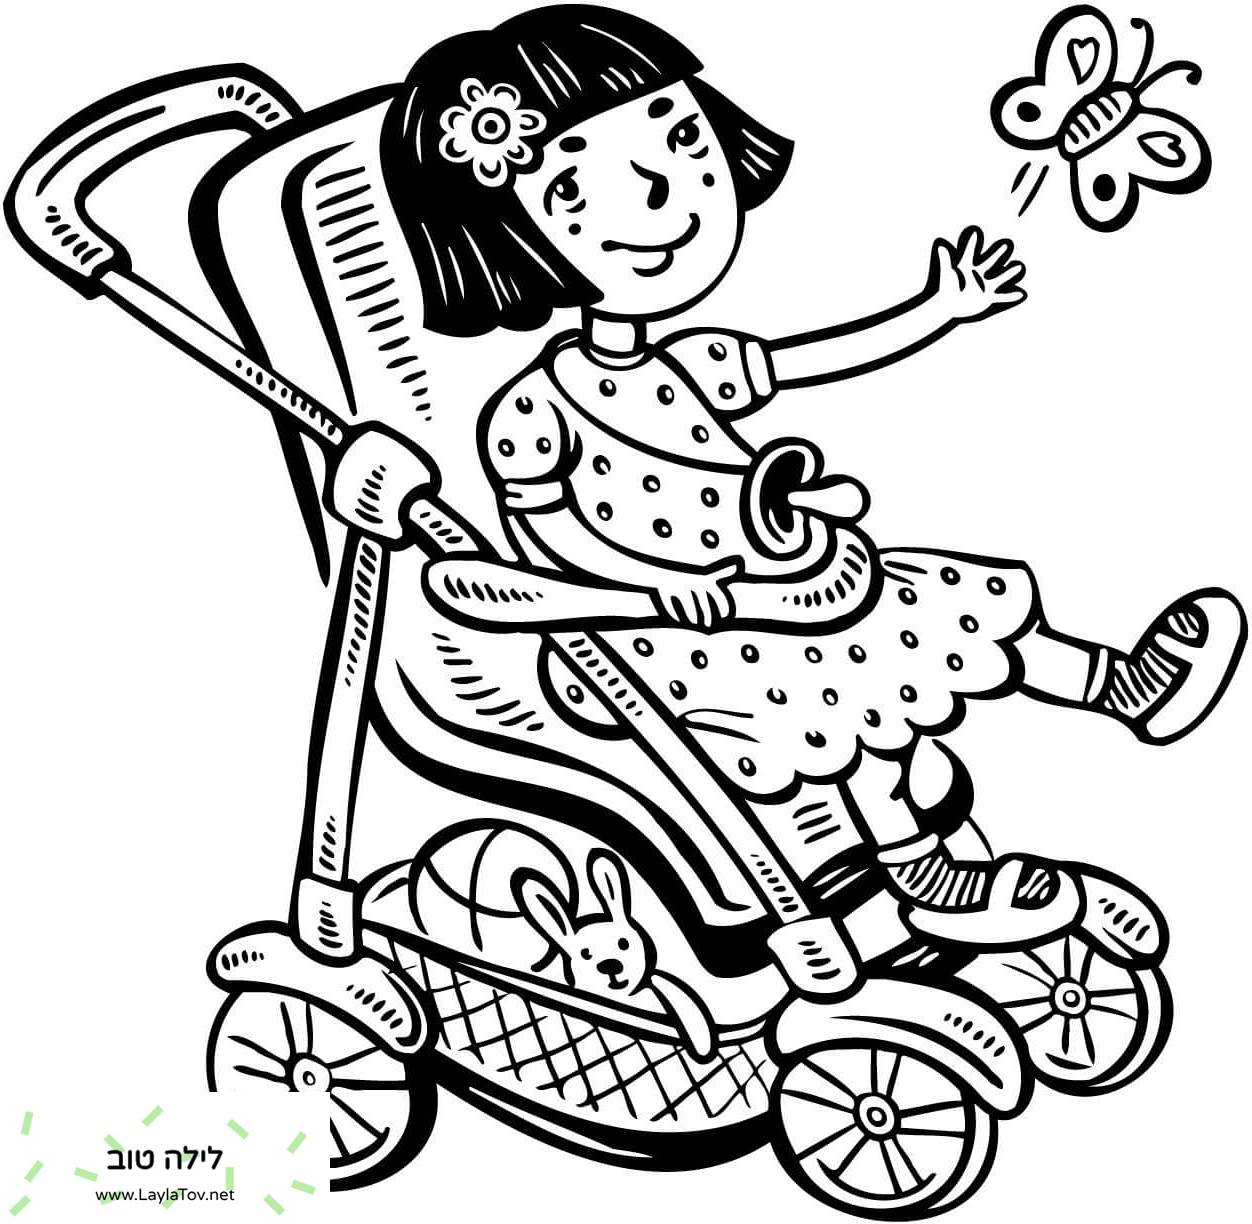 ילדה קטנה בעגלה שלה